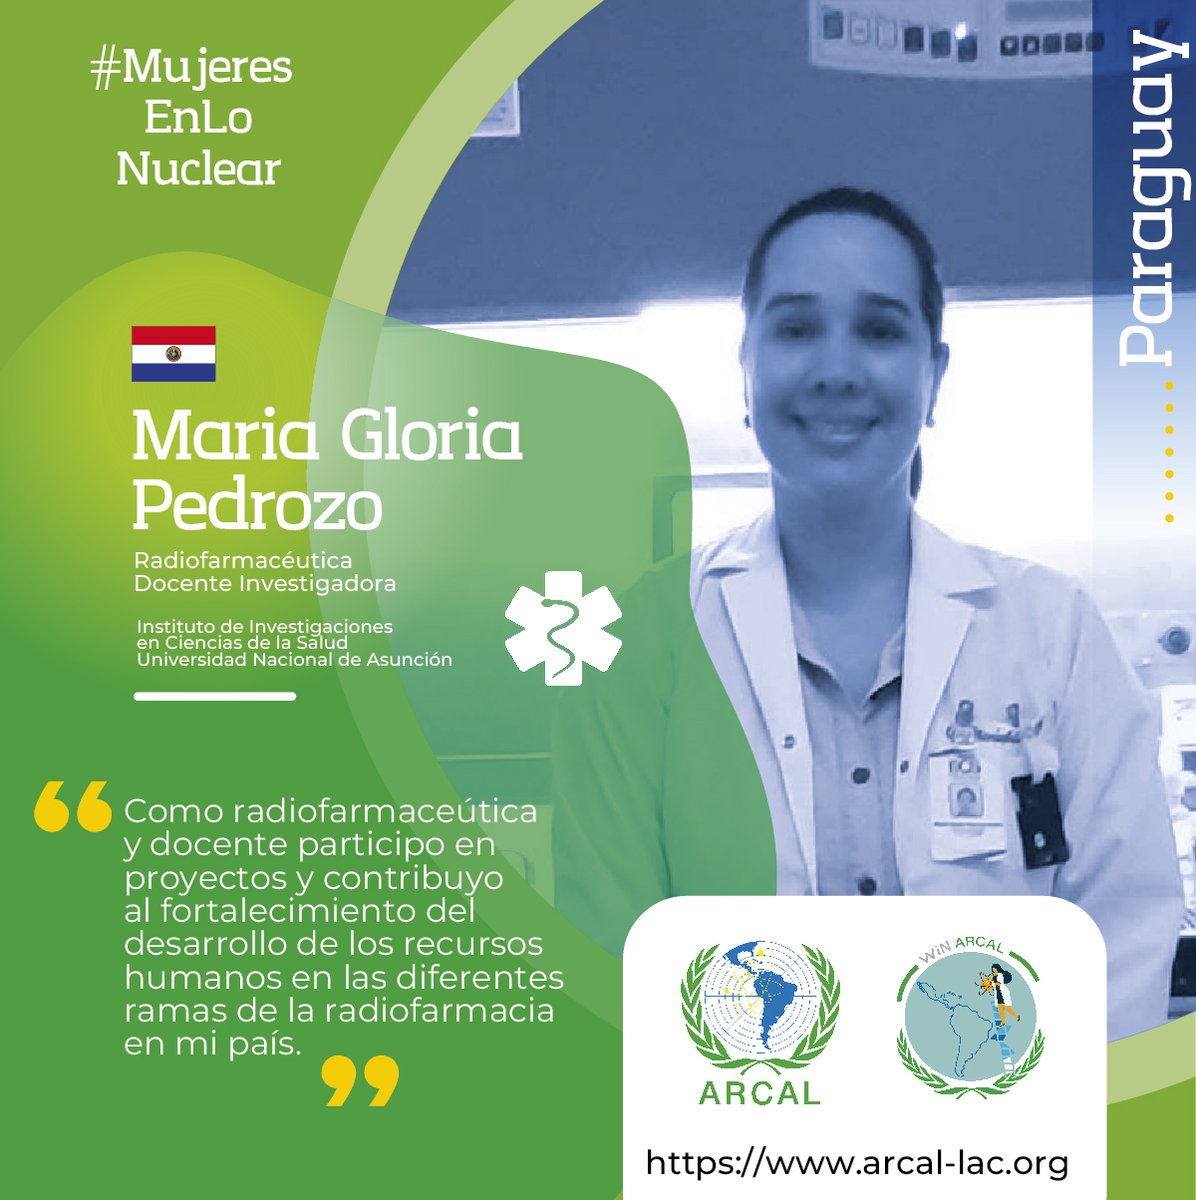 #MujeresEnLoNuclear Hoy reconocemos a María Gloria Pedrozo, radiofarmacéutica y docente investigadora del Instituto de Investigaciones en Ciencias de la Salud de la Universidad Nacional de Asunción [@una_py] 🇵🇾 ¡Gracias por su aporte y contribución!